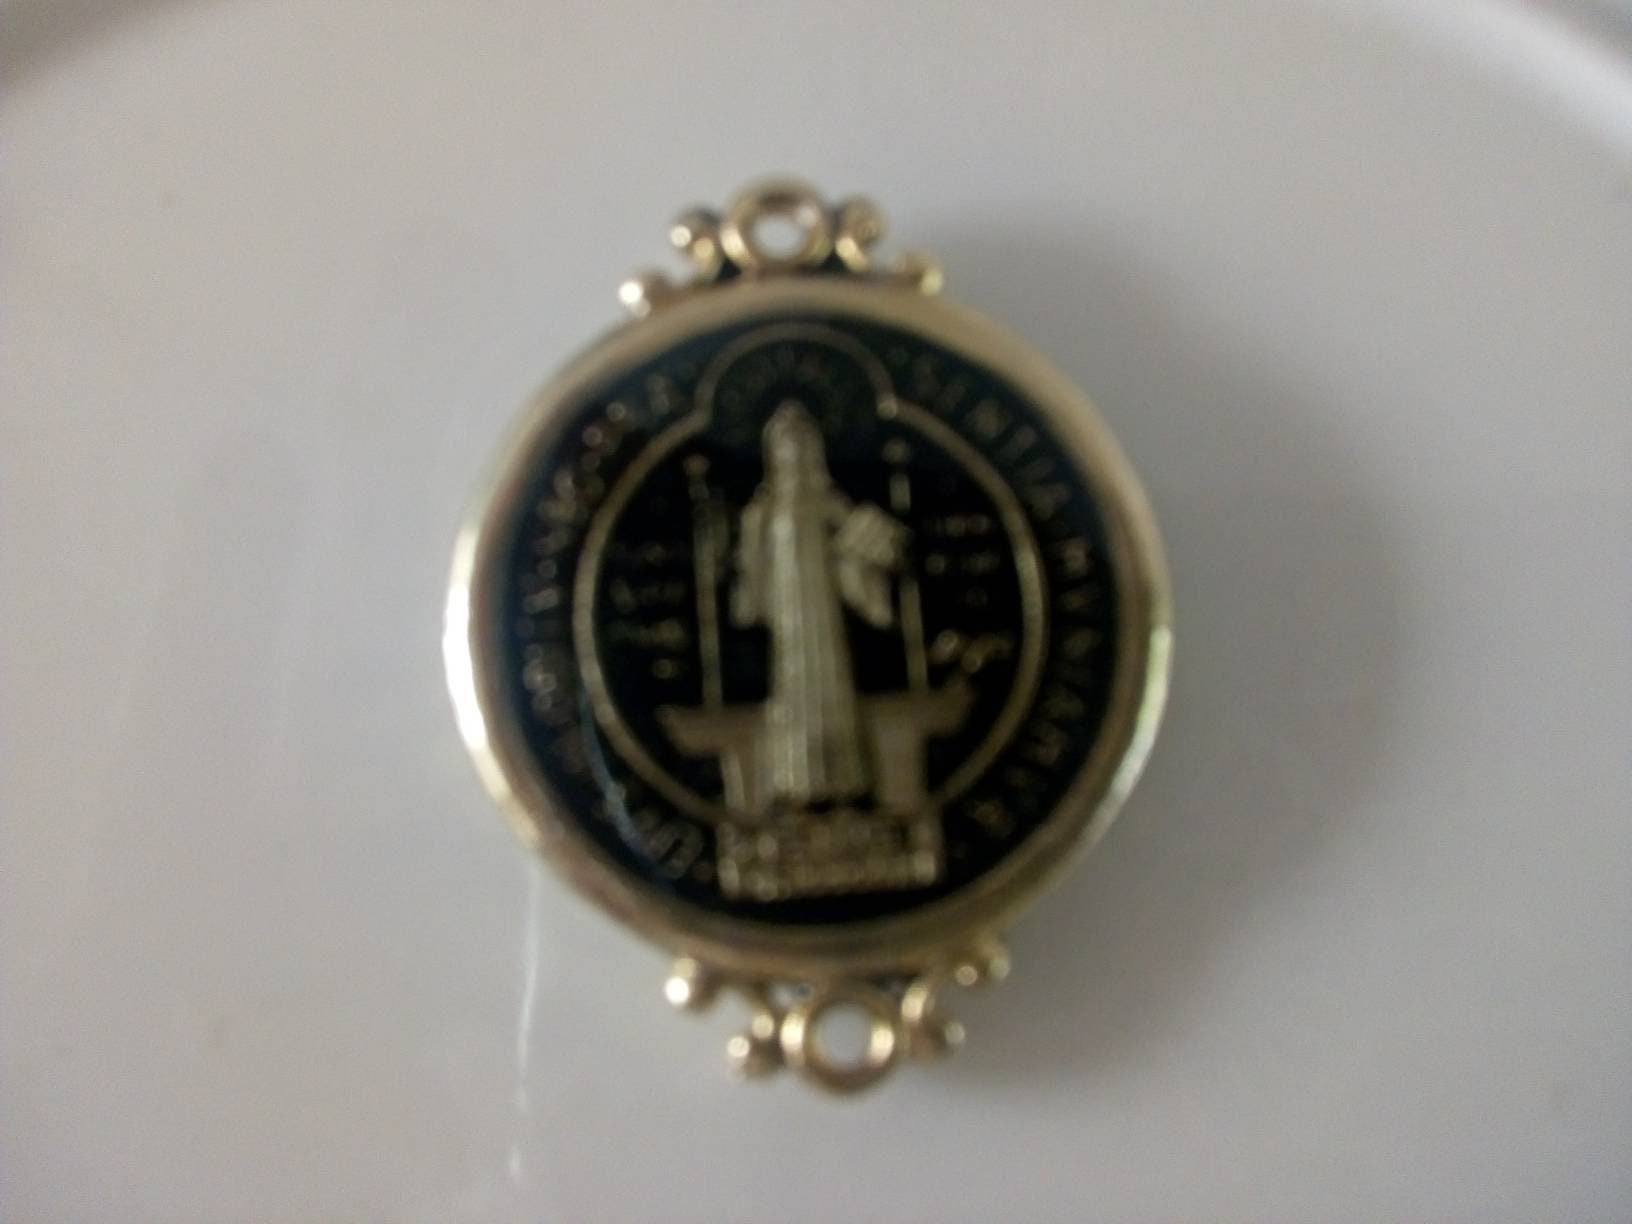 Medalla Chica San Benito Doble Cara Plata .925